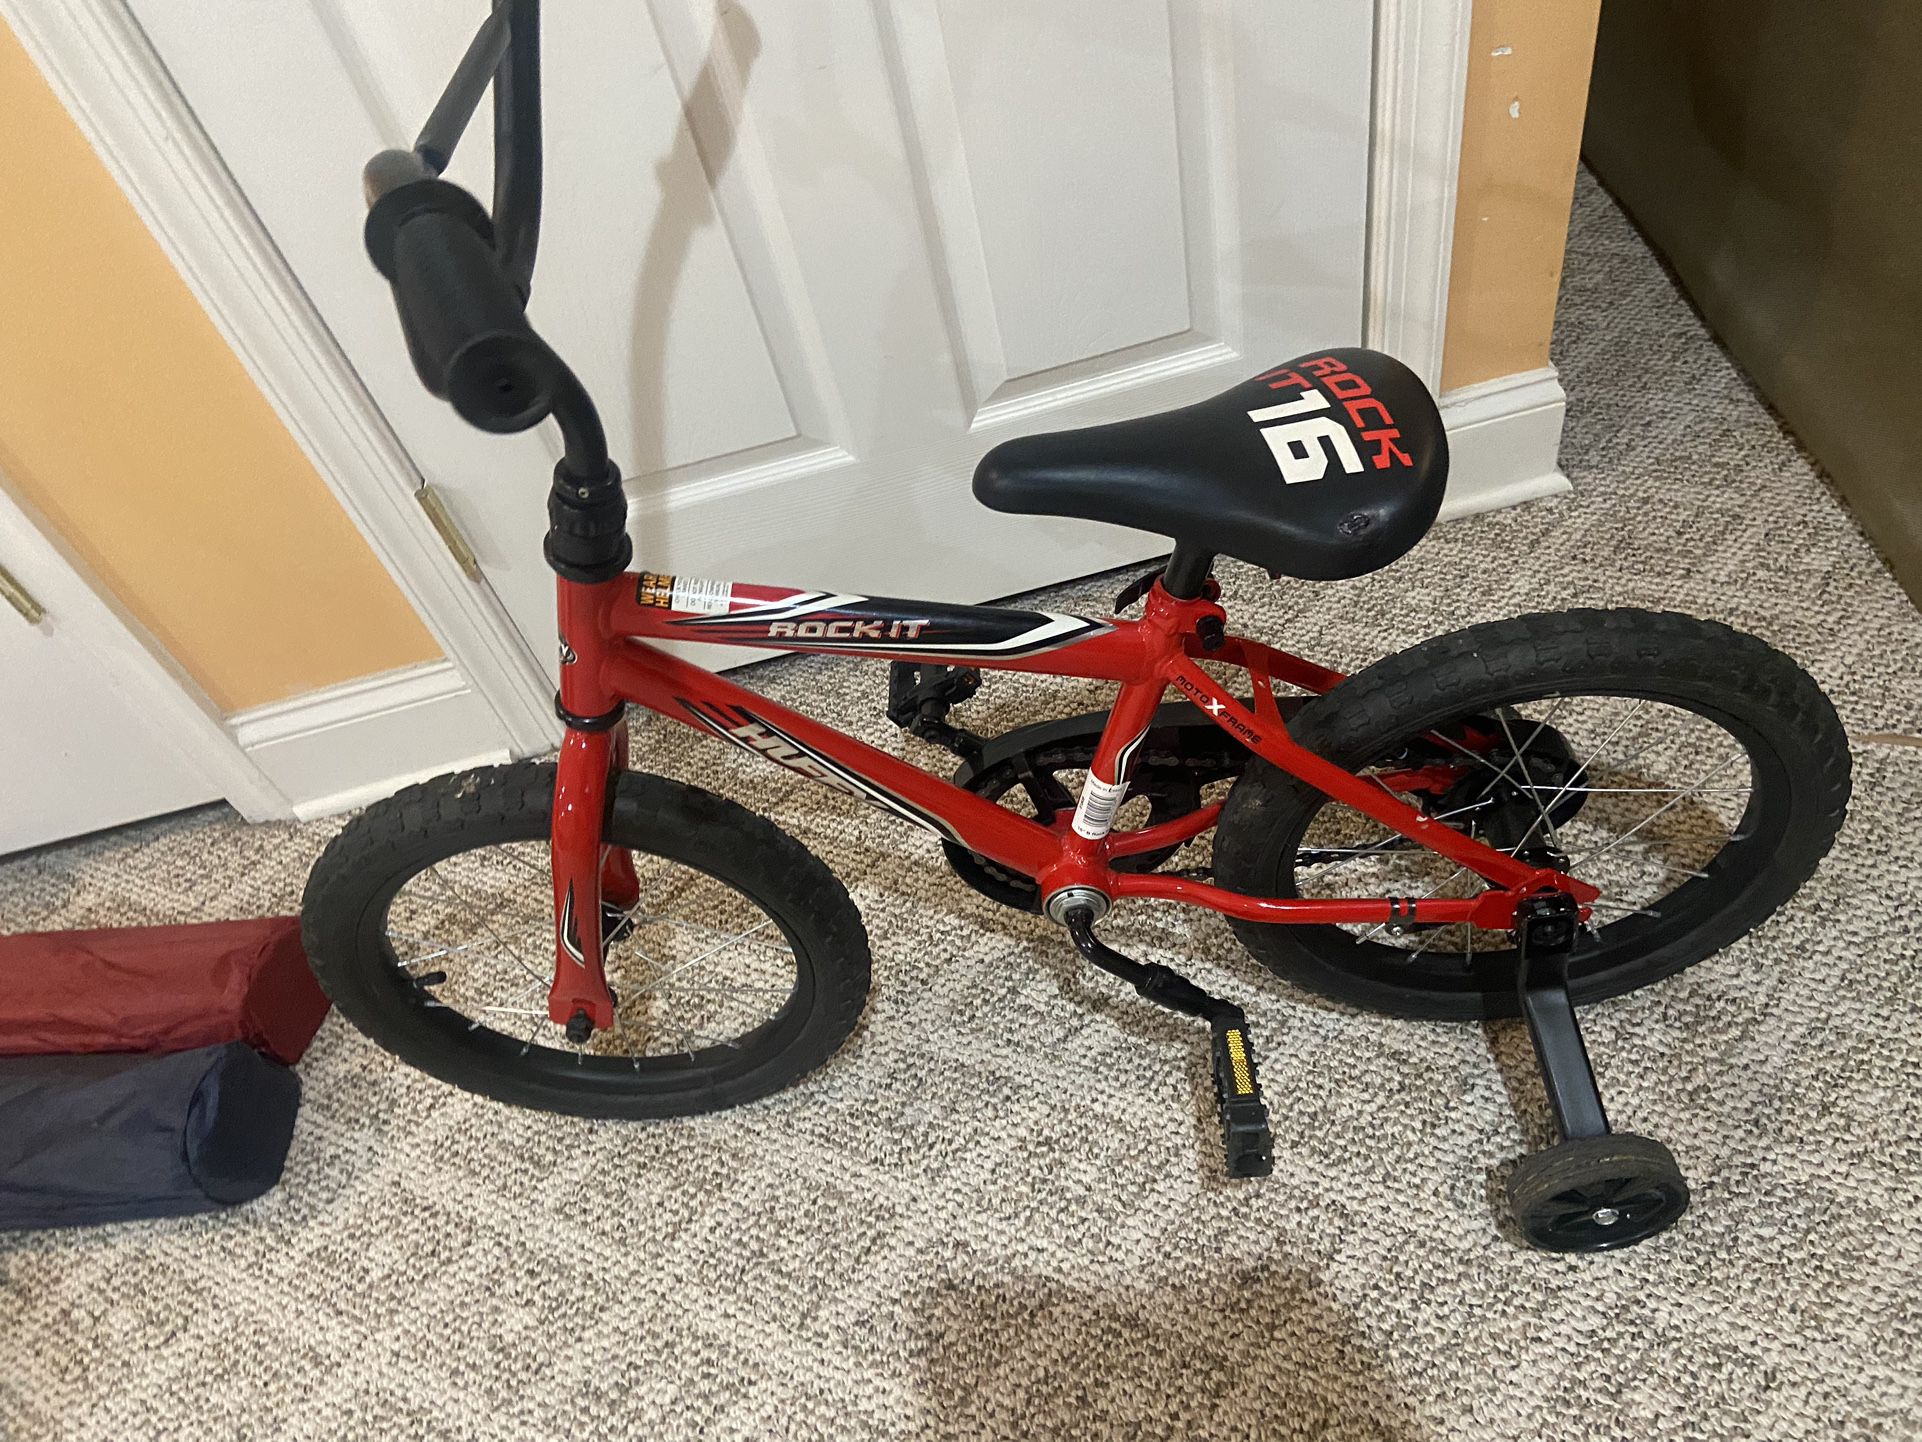 Boys $20 Bike Bicycle paid $80  W/ Training Wheels Red 16" Kids Bmx 